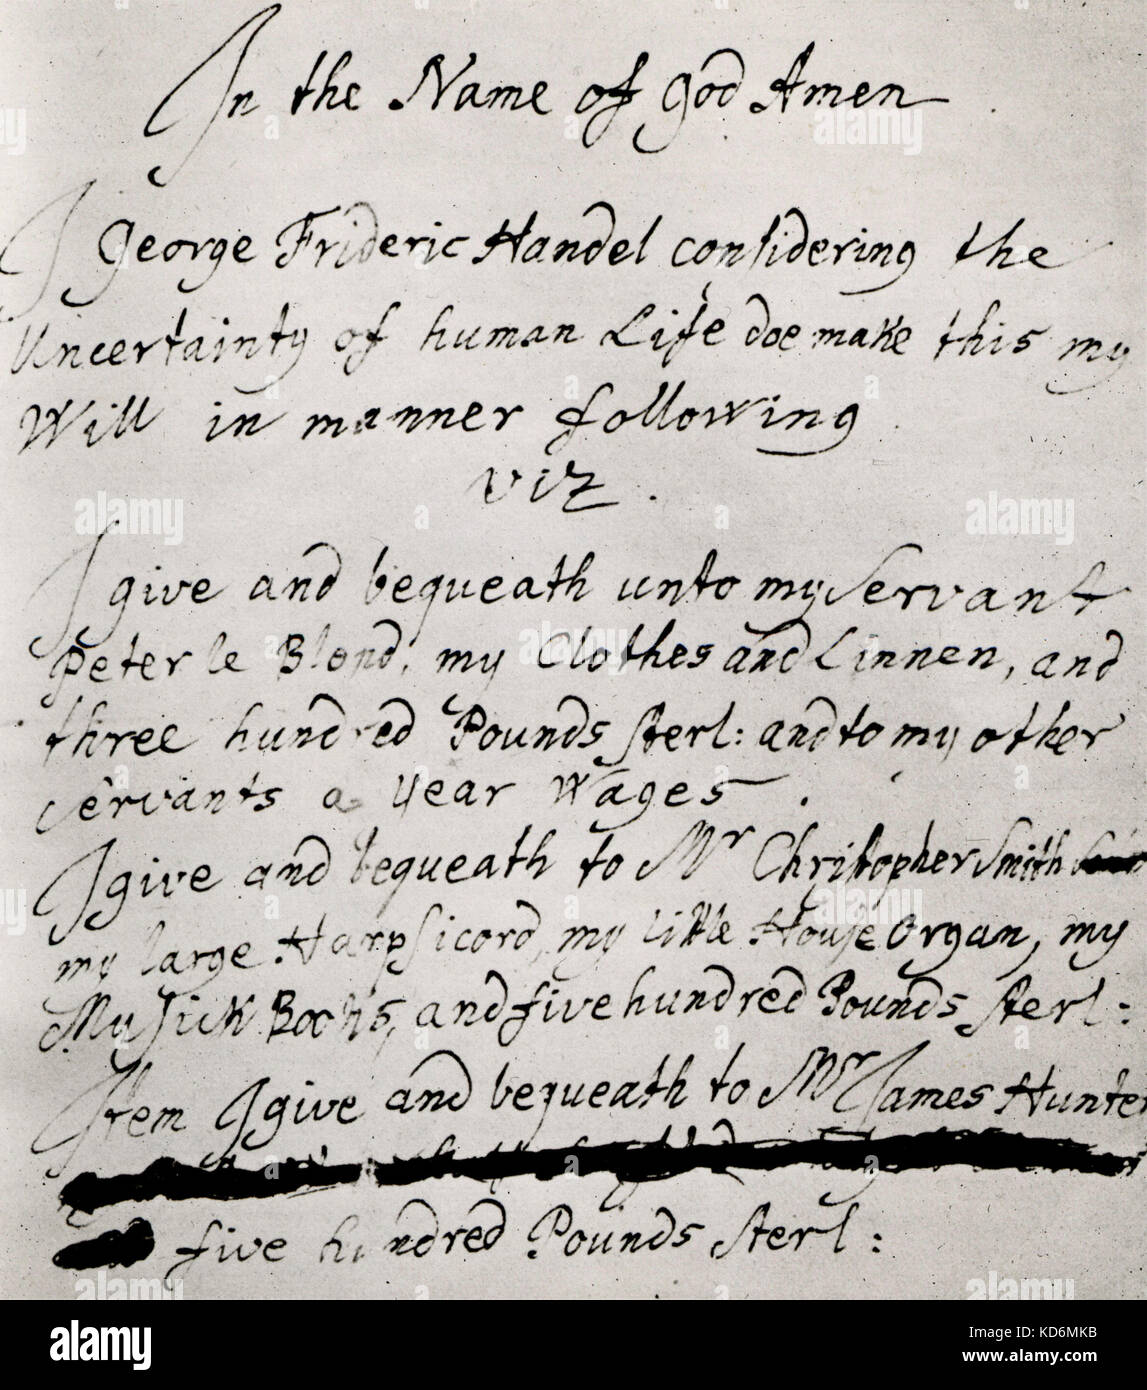 Partie de Georg Friedrich Haendel, sera écrite à la main. Compositeur allemand, 23 février 1685 - 14 Avril 1759 Banque D'Images